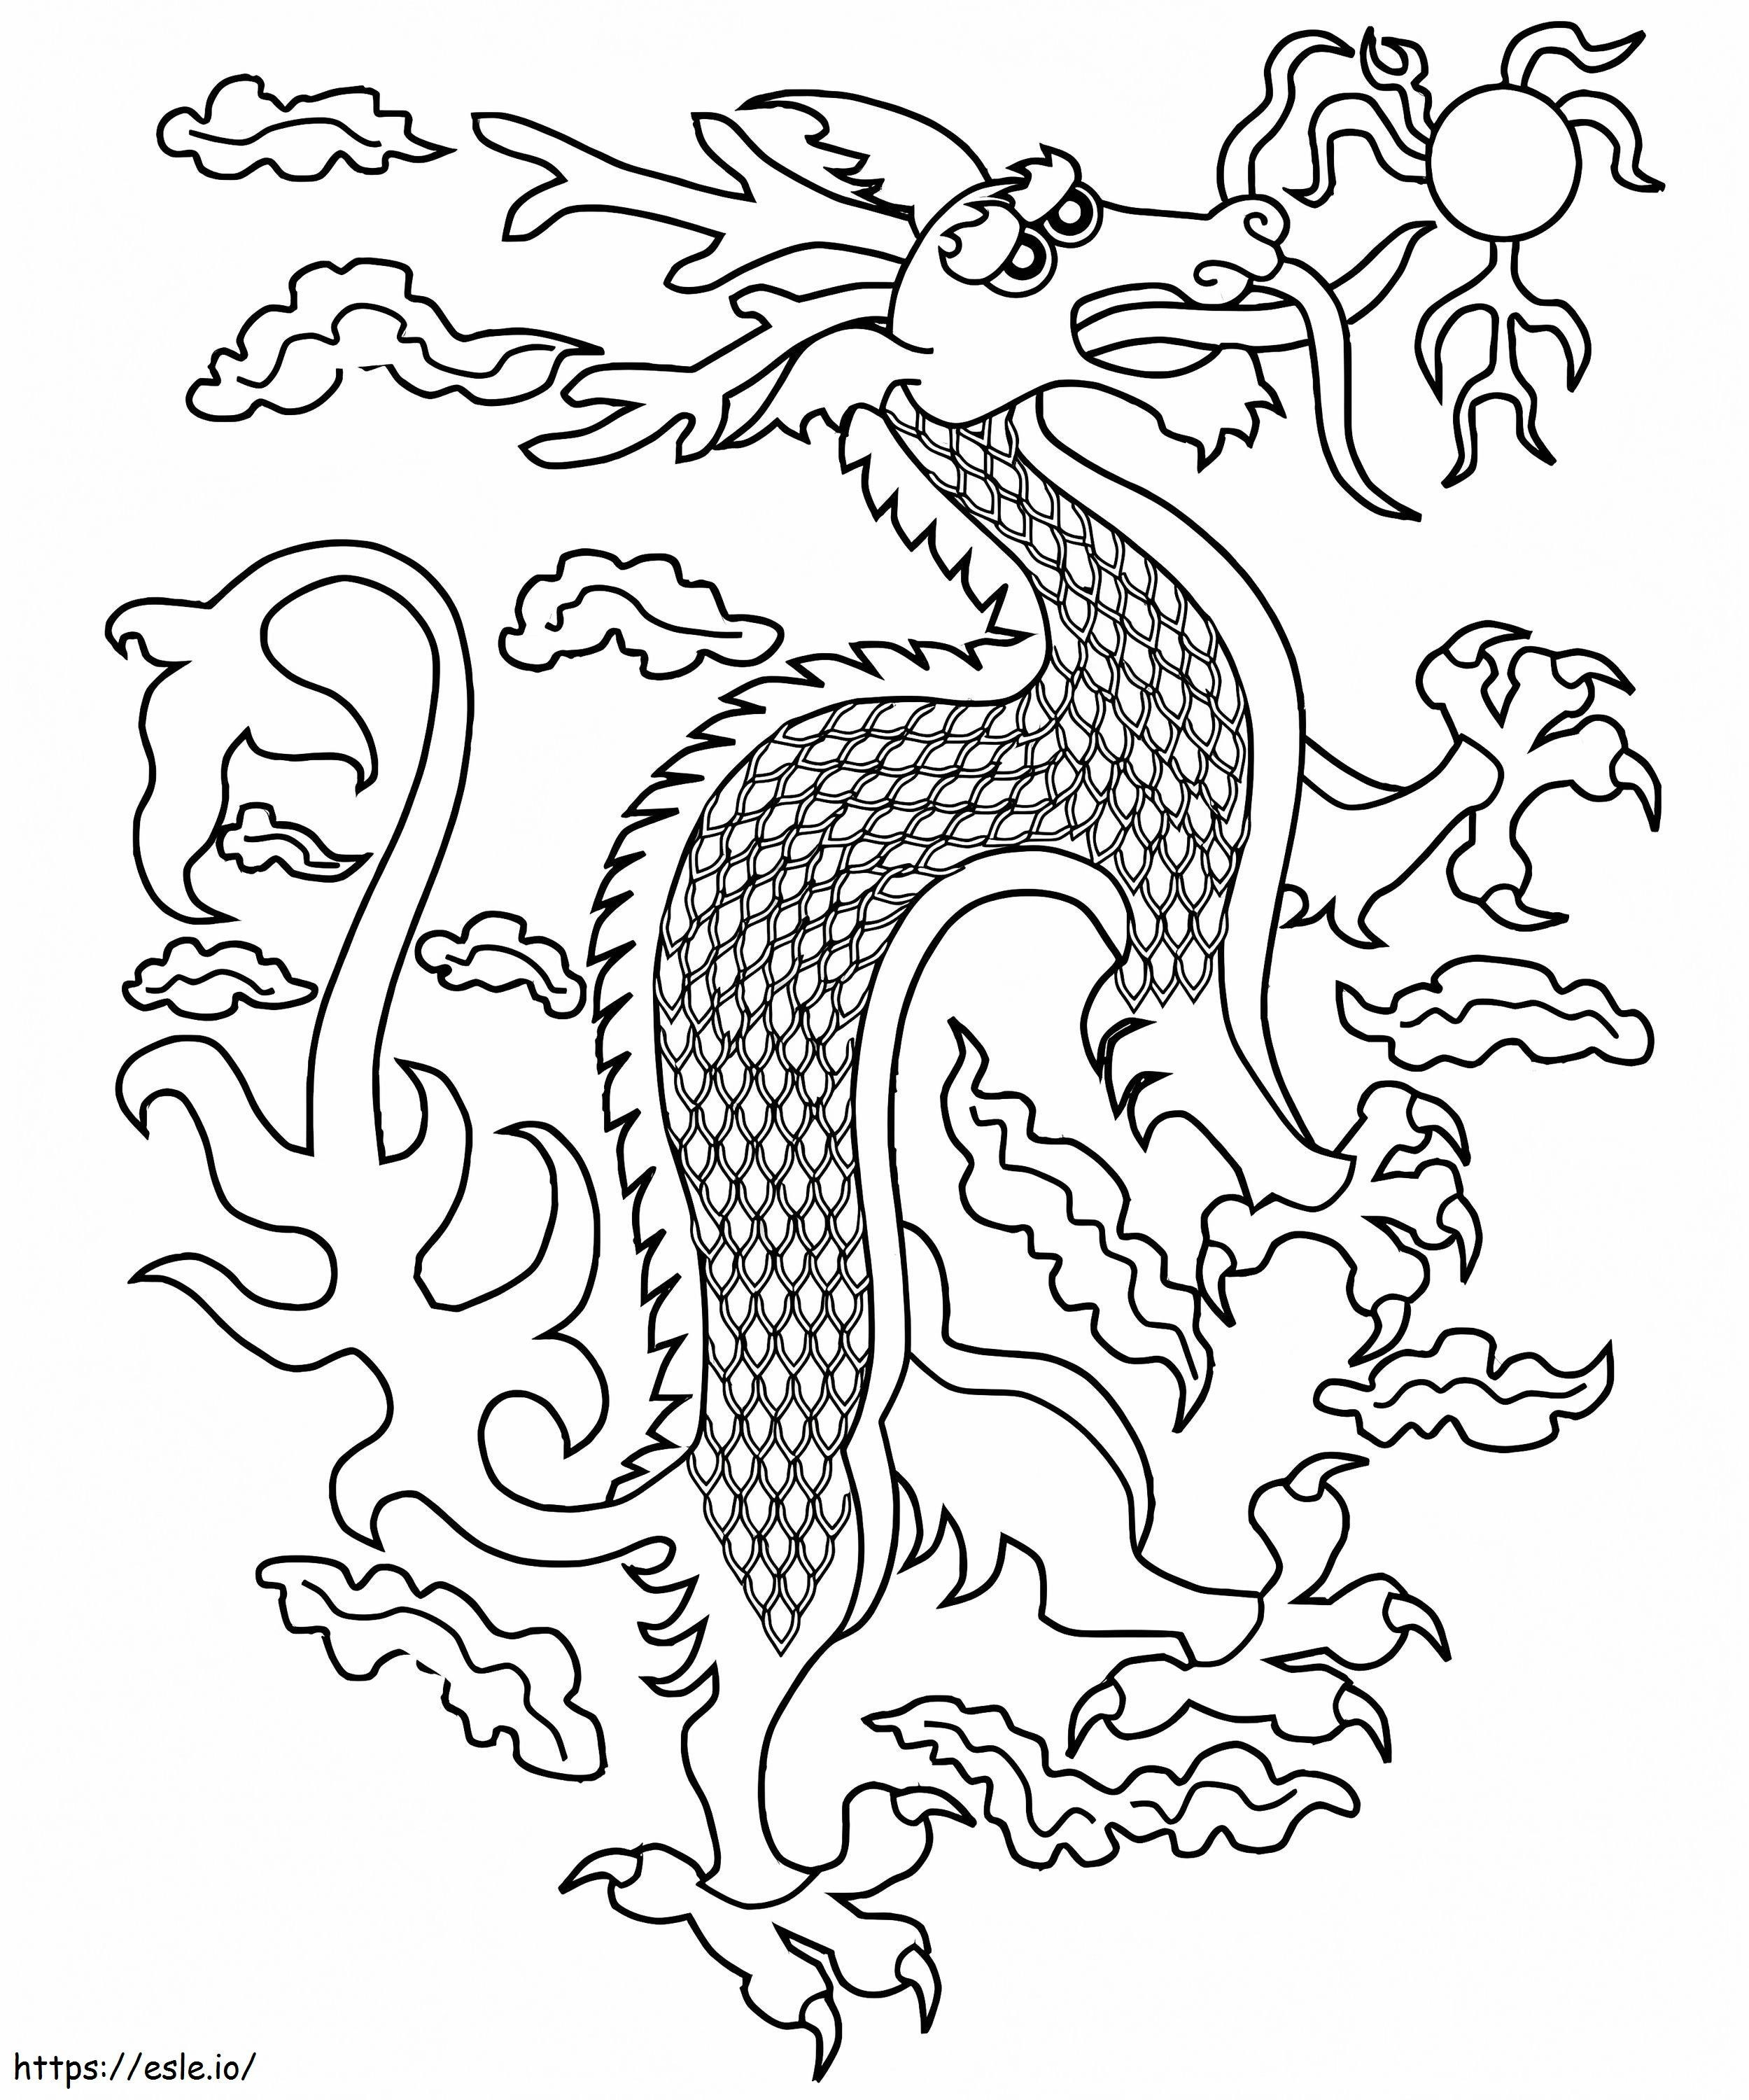 Trist dragon chinezesc de colorat